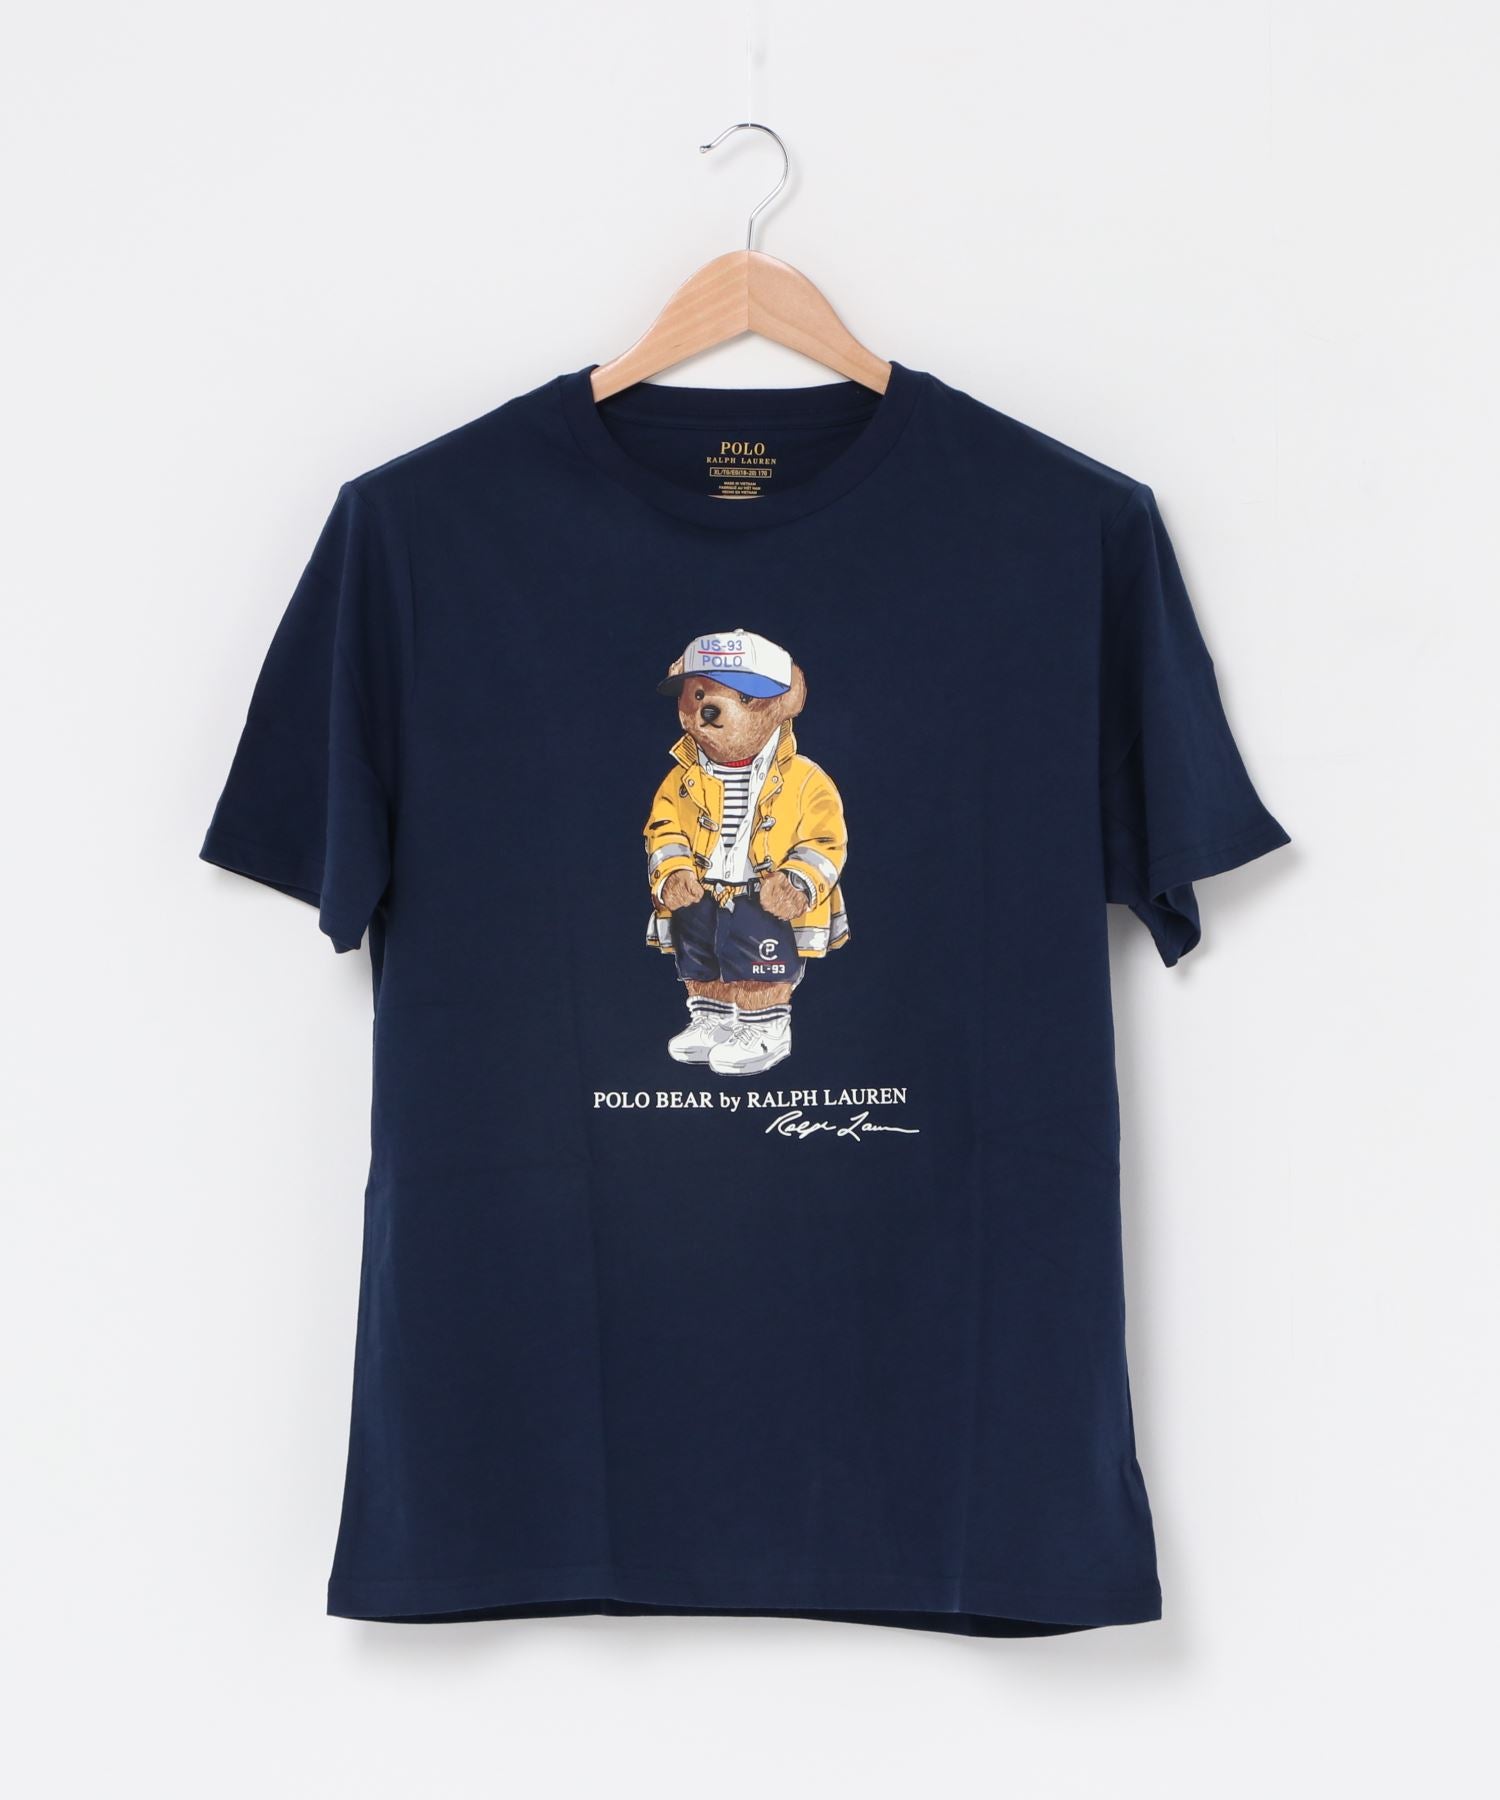 【POLO RALPHLAUREN/ポロ ラルフローレン】ポロベアーTシャツ ボーイズライン/Polo Bear